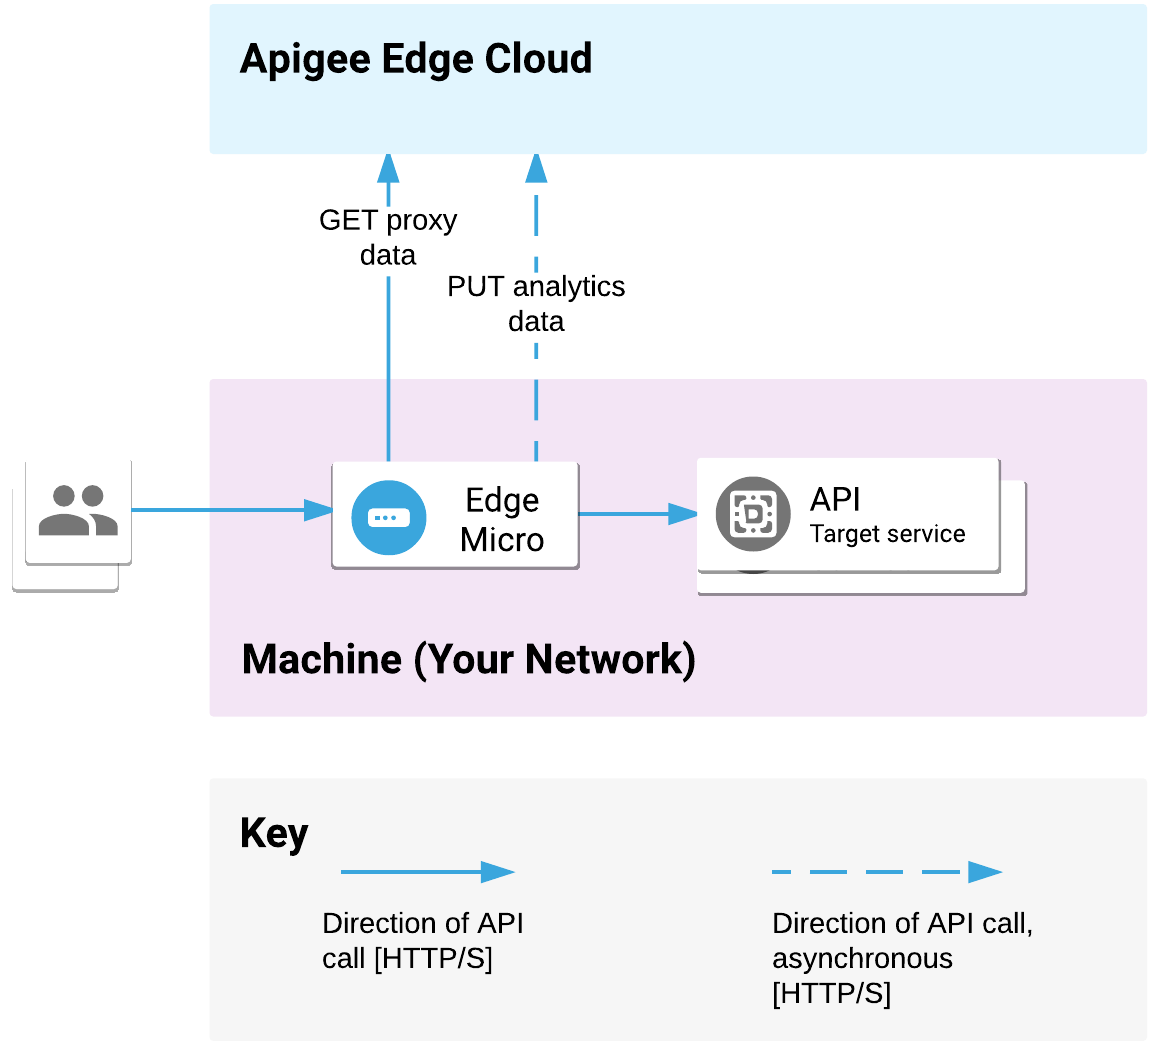 O microgateway de borda é implantado na sua rede. Ele processa solicitações de API de clientes e chama serviços de destino. O microgateway comunica dados de
             proxy e análise
             com o Apigee Edge Cloud.